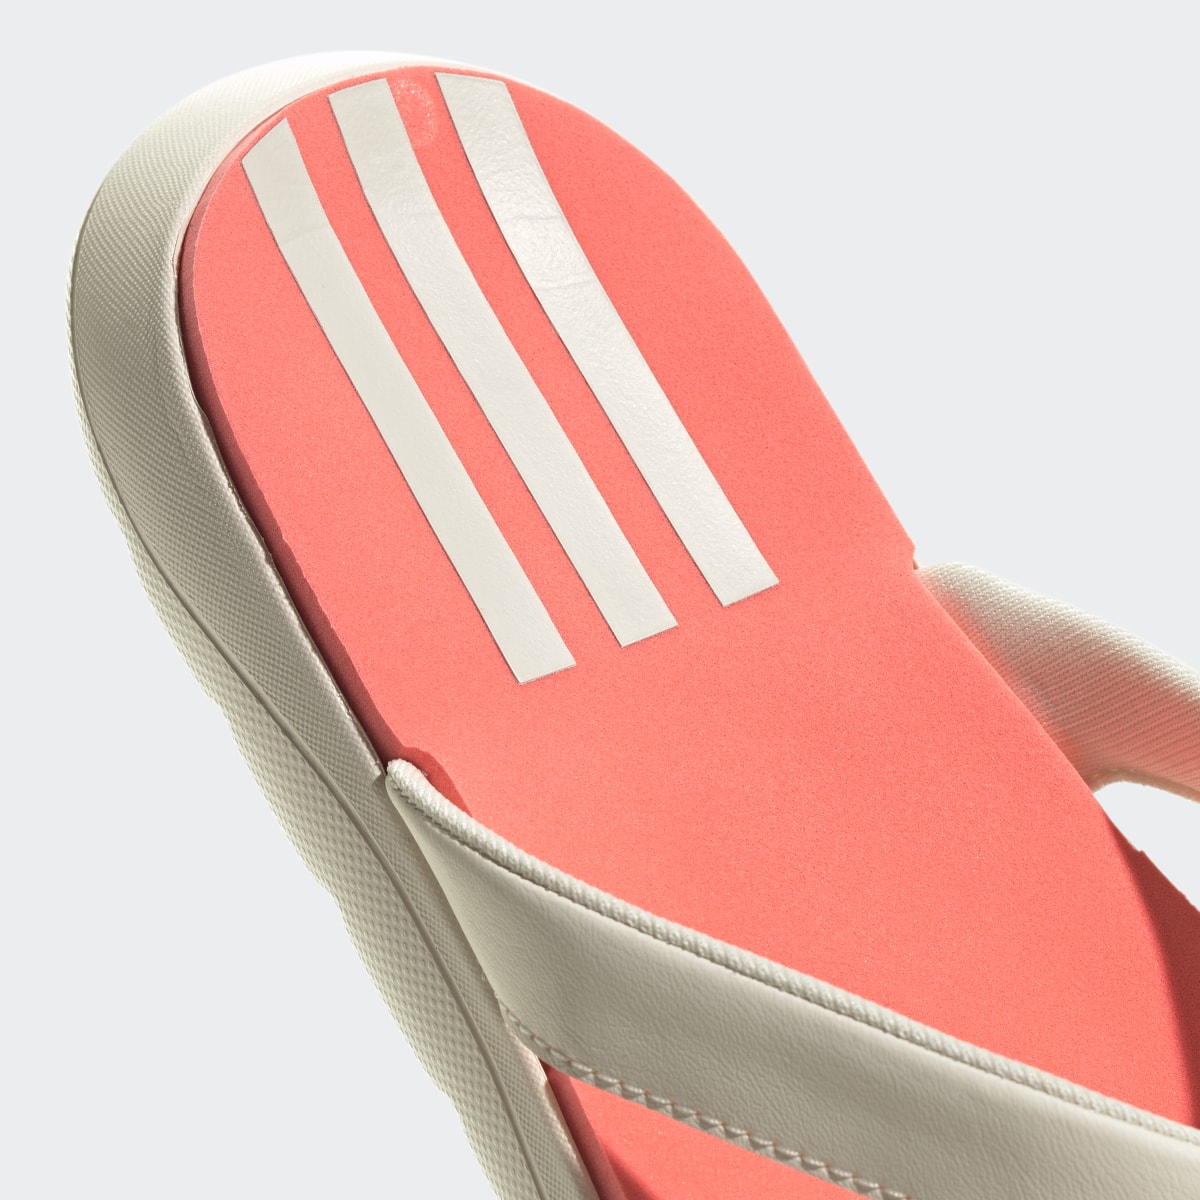 Adidas Claquette Comfort. 9